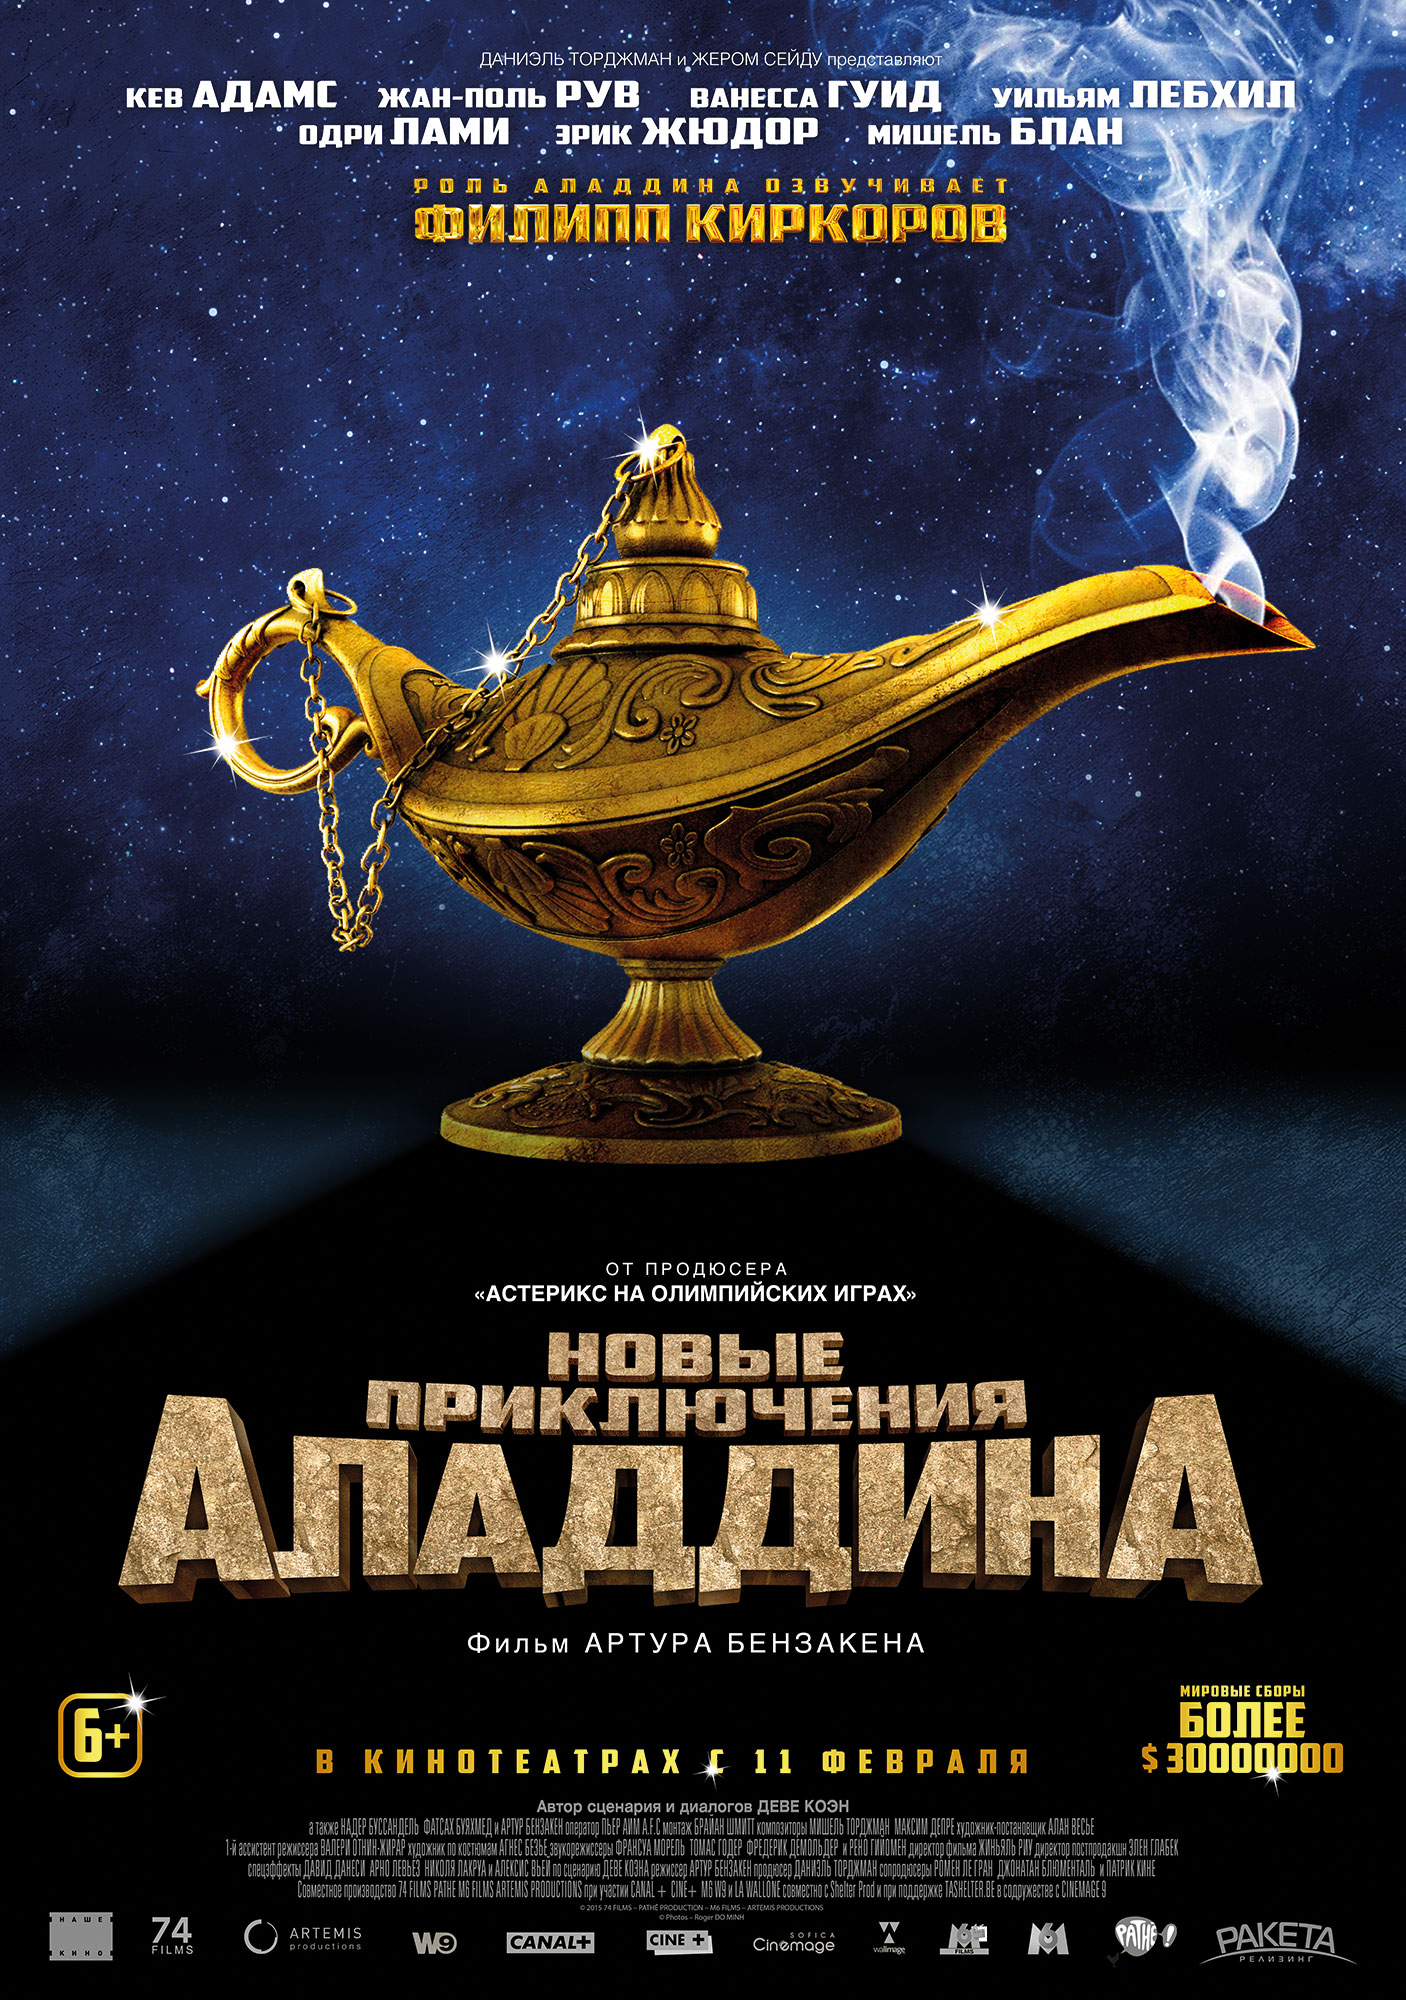 Постер - Новые приключения Аладдина: 1406x2000 / 720.41 Кб